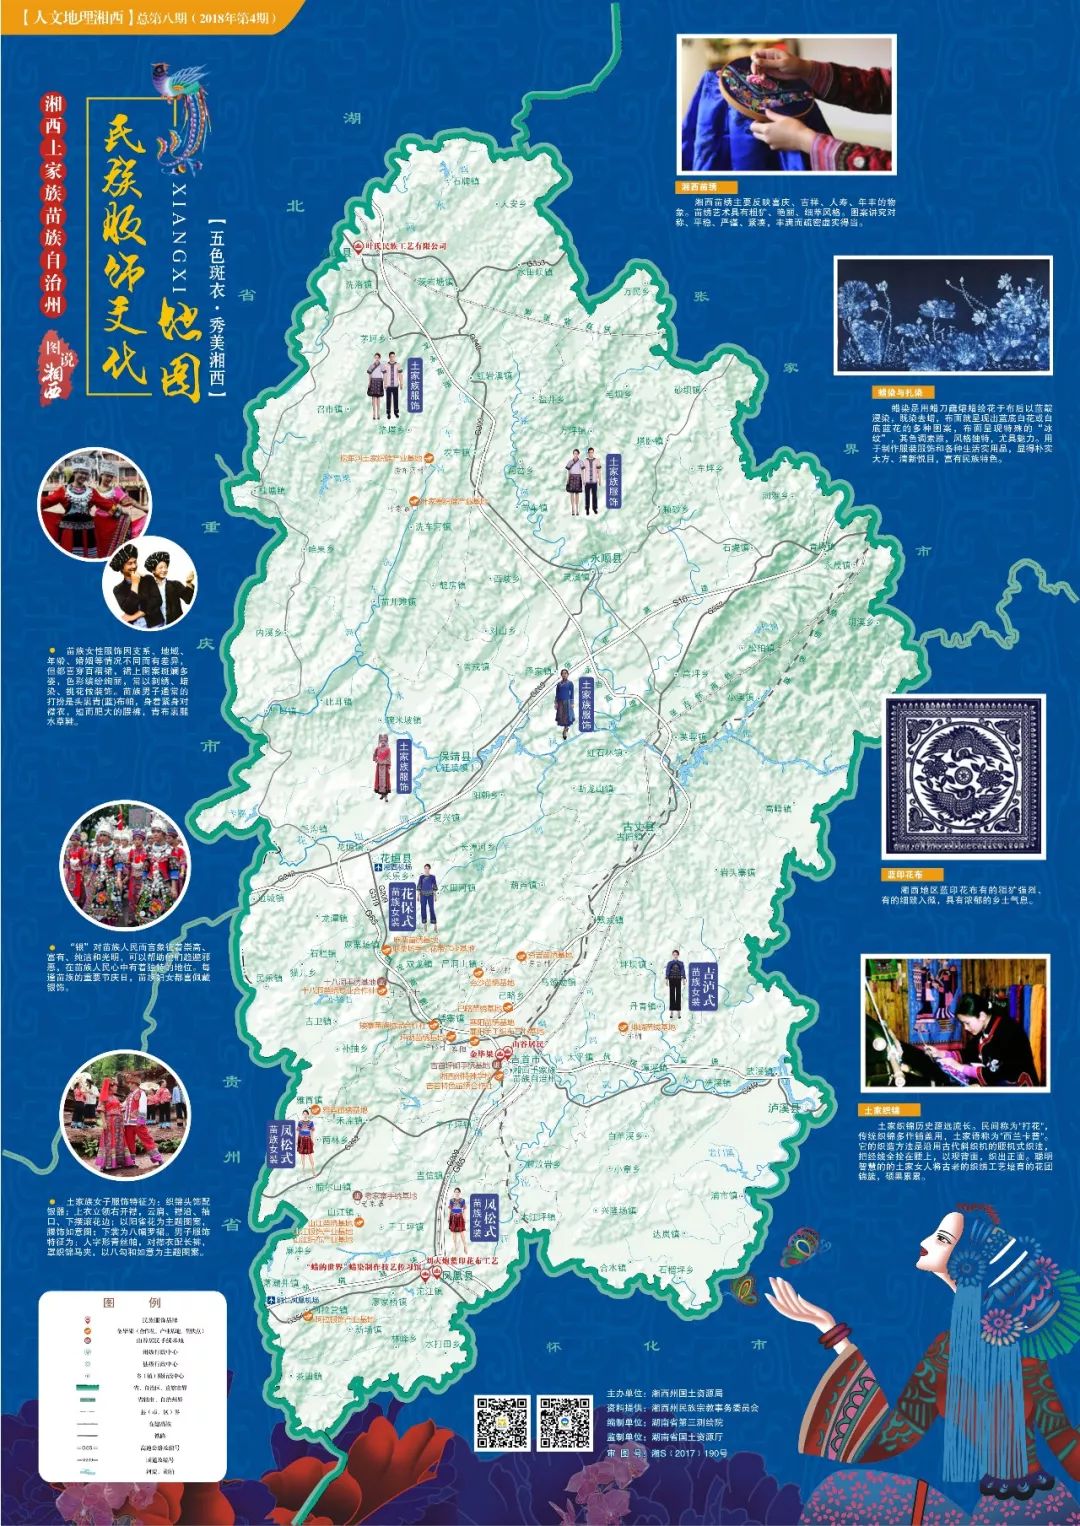 休闲旅游大乐园,和谐宜居大家园五大主题内容,以地图为载体描绘湘西州图片